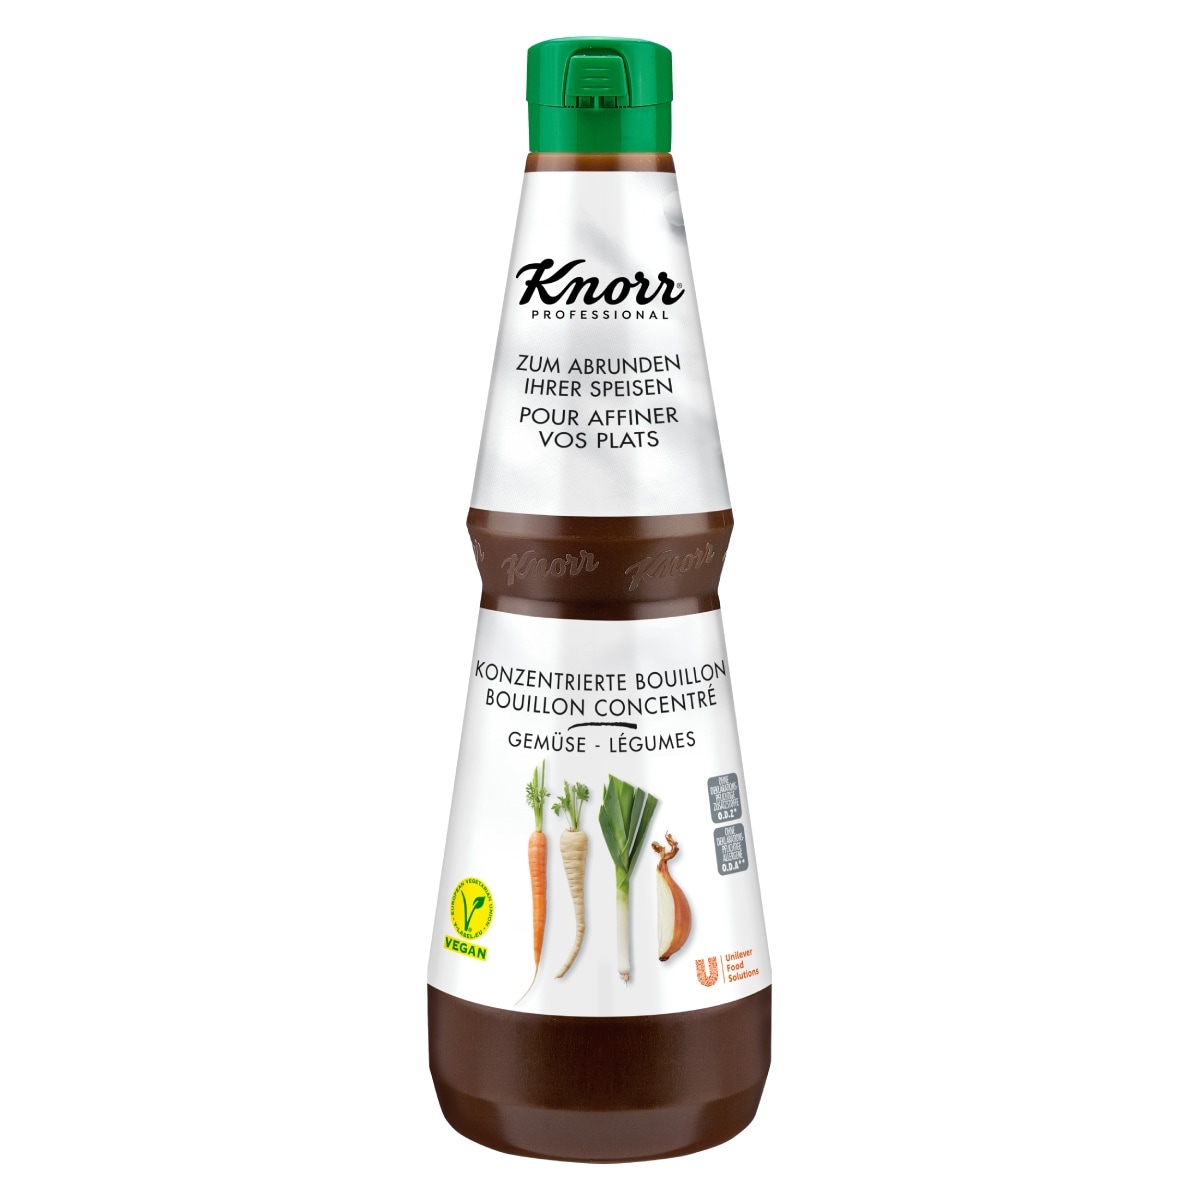 Knorr Течен Зеленчуков бульон - Knorr професионални течни бульони в концентрирана формула - бульони от ново поколение подходящи за всяко ястие